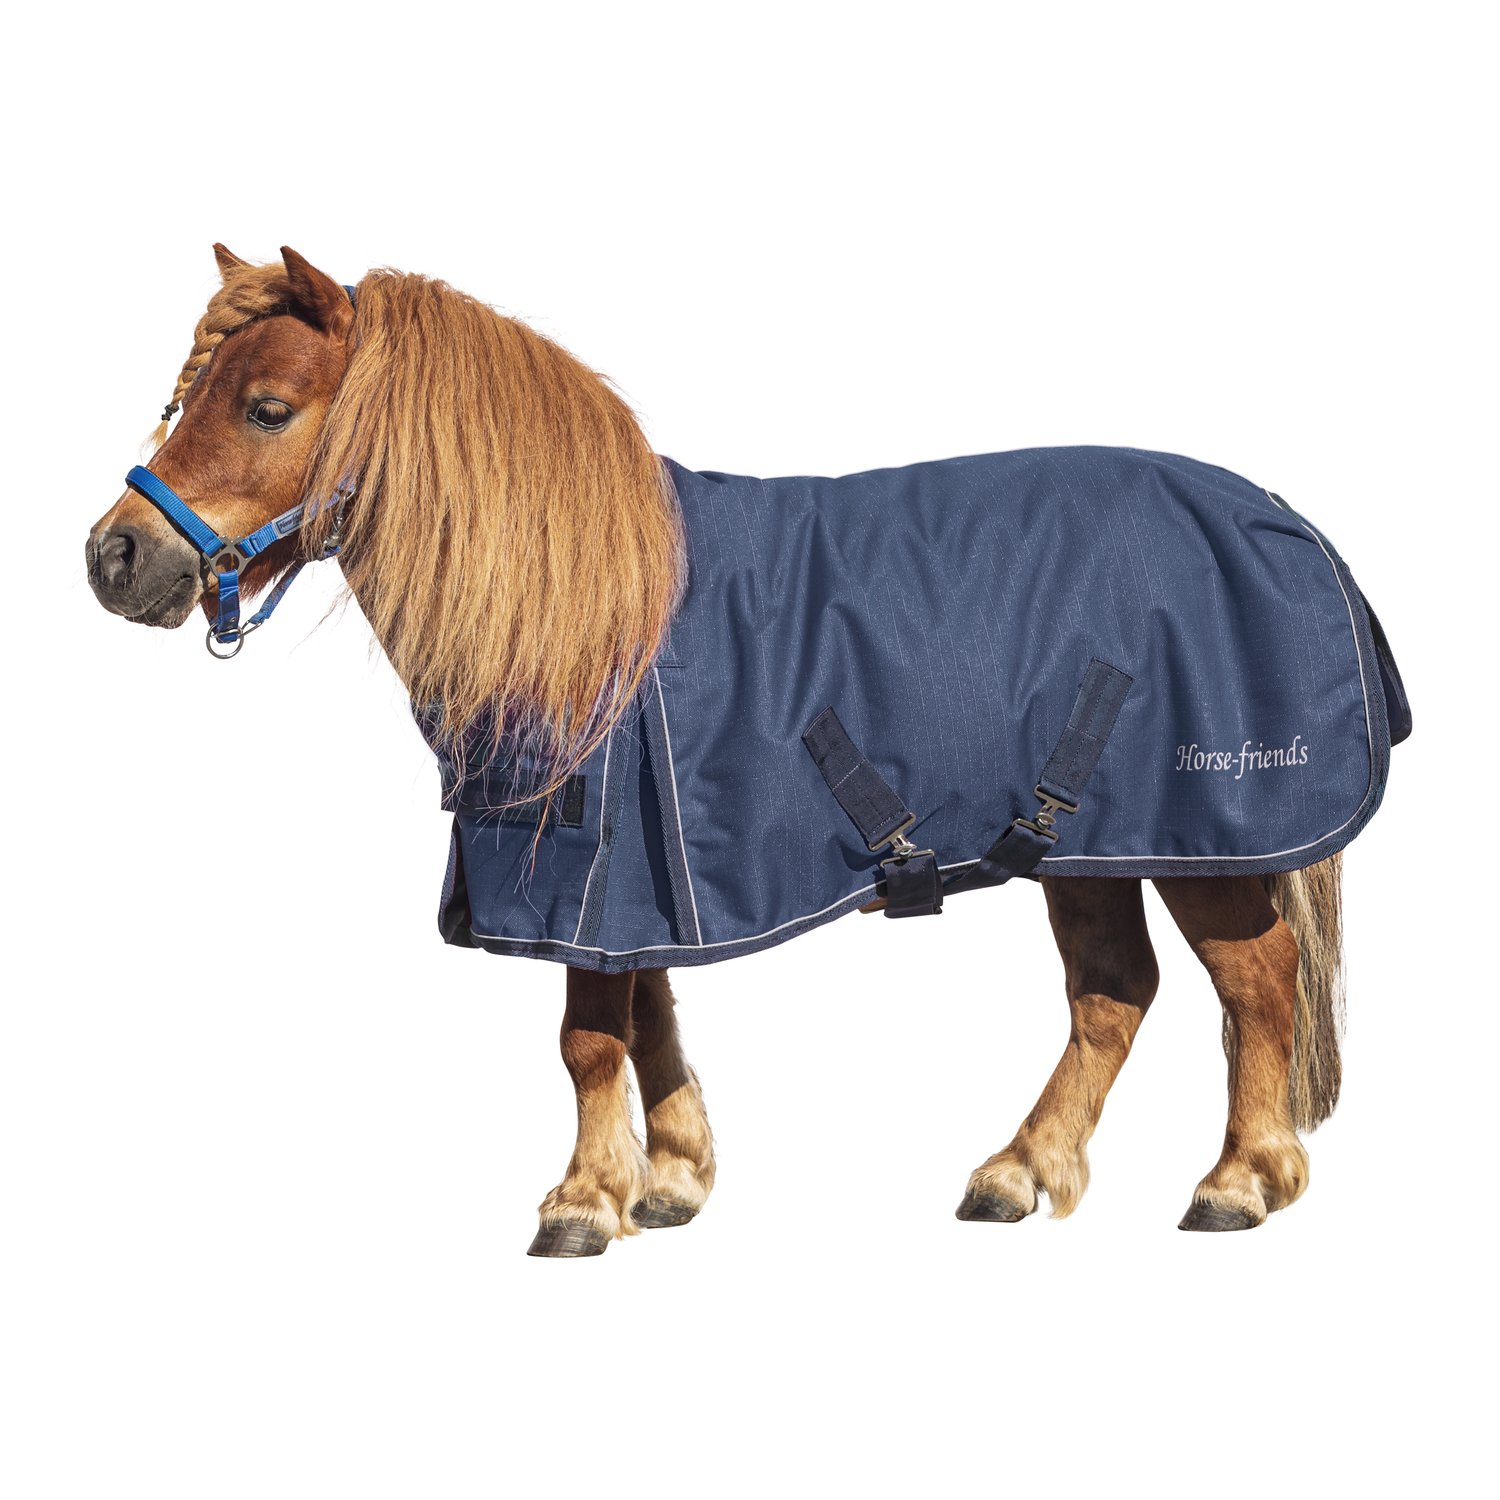 Horse-friends Outdoordecke 150g, für Minishetty und Shetty 